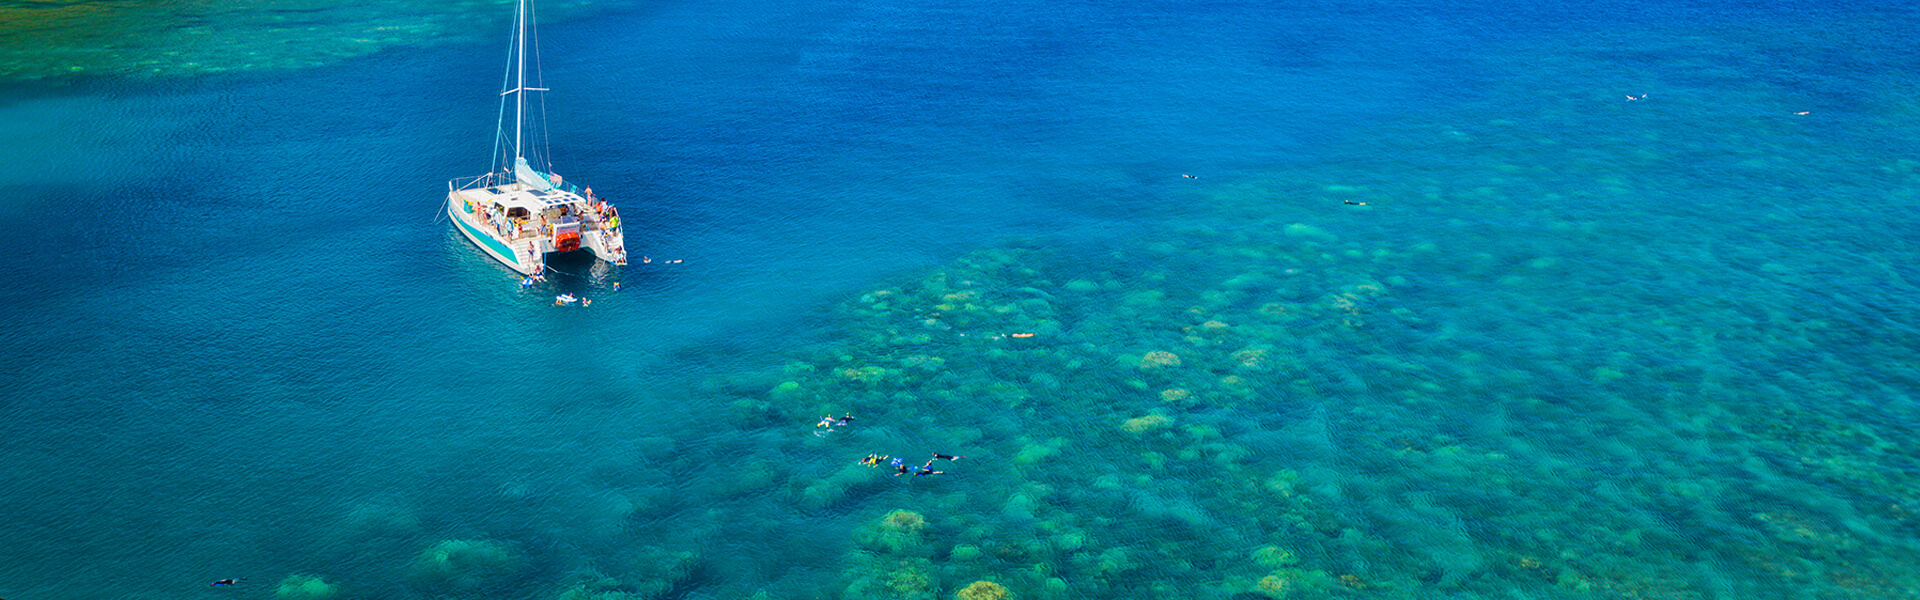 Aerial view of catamaran and snorkelers in bay